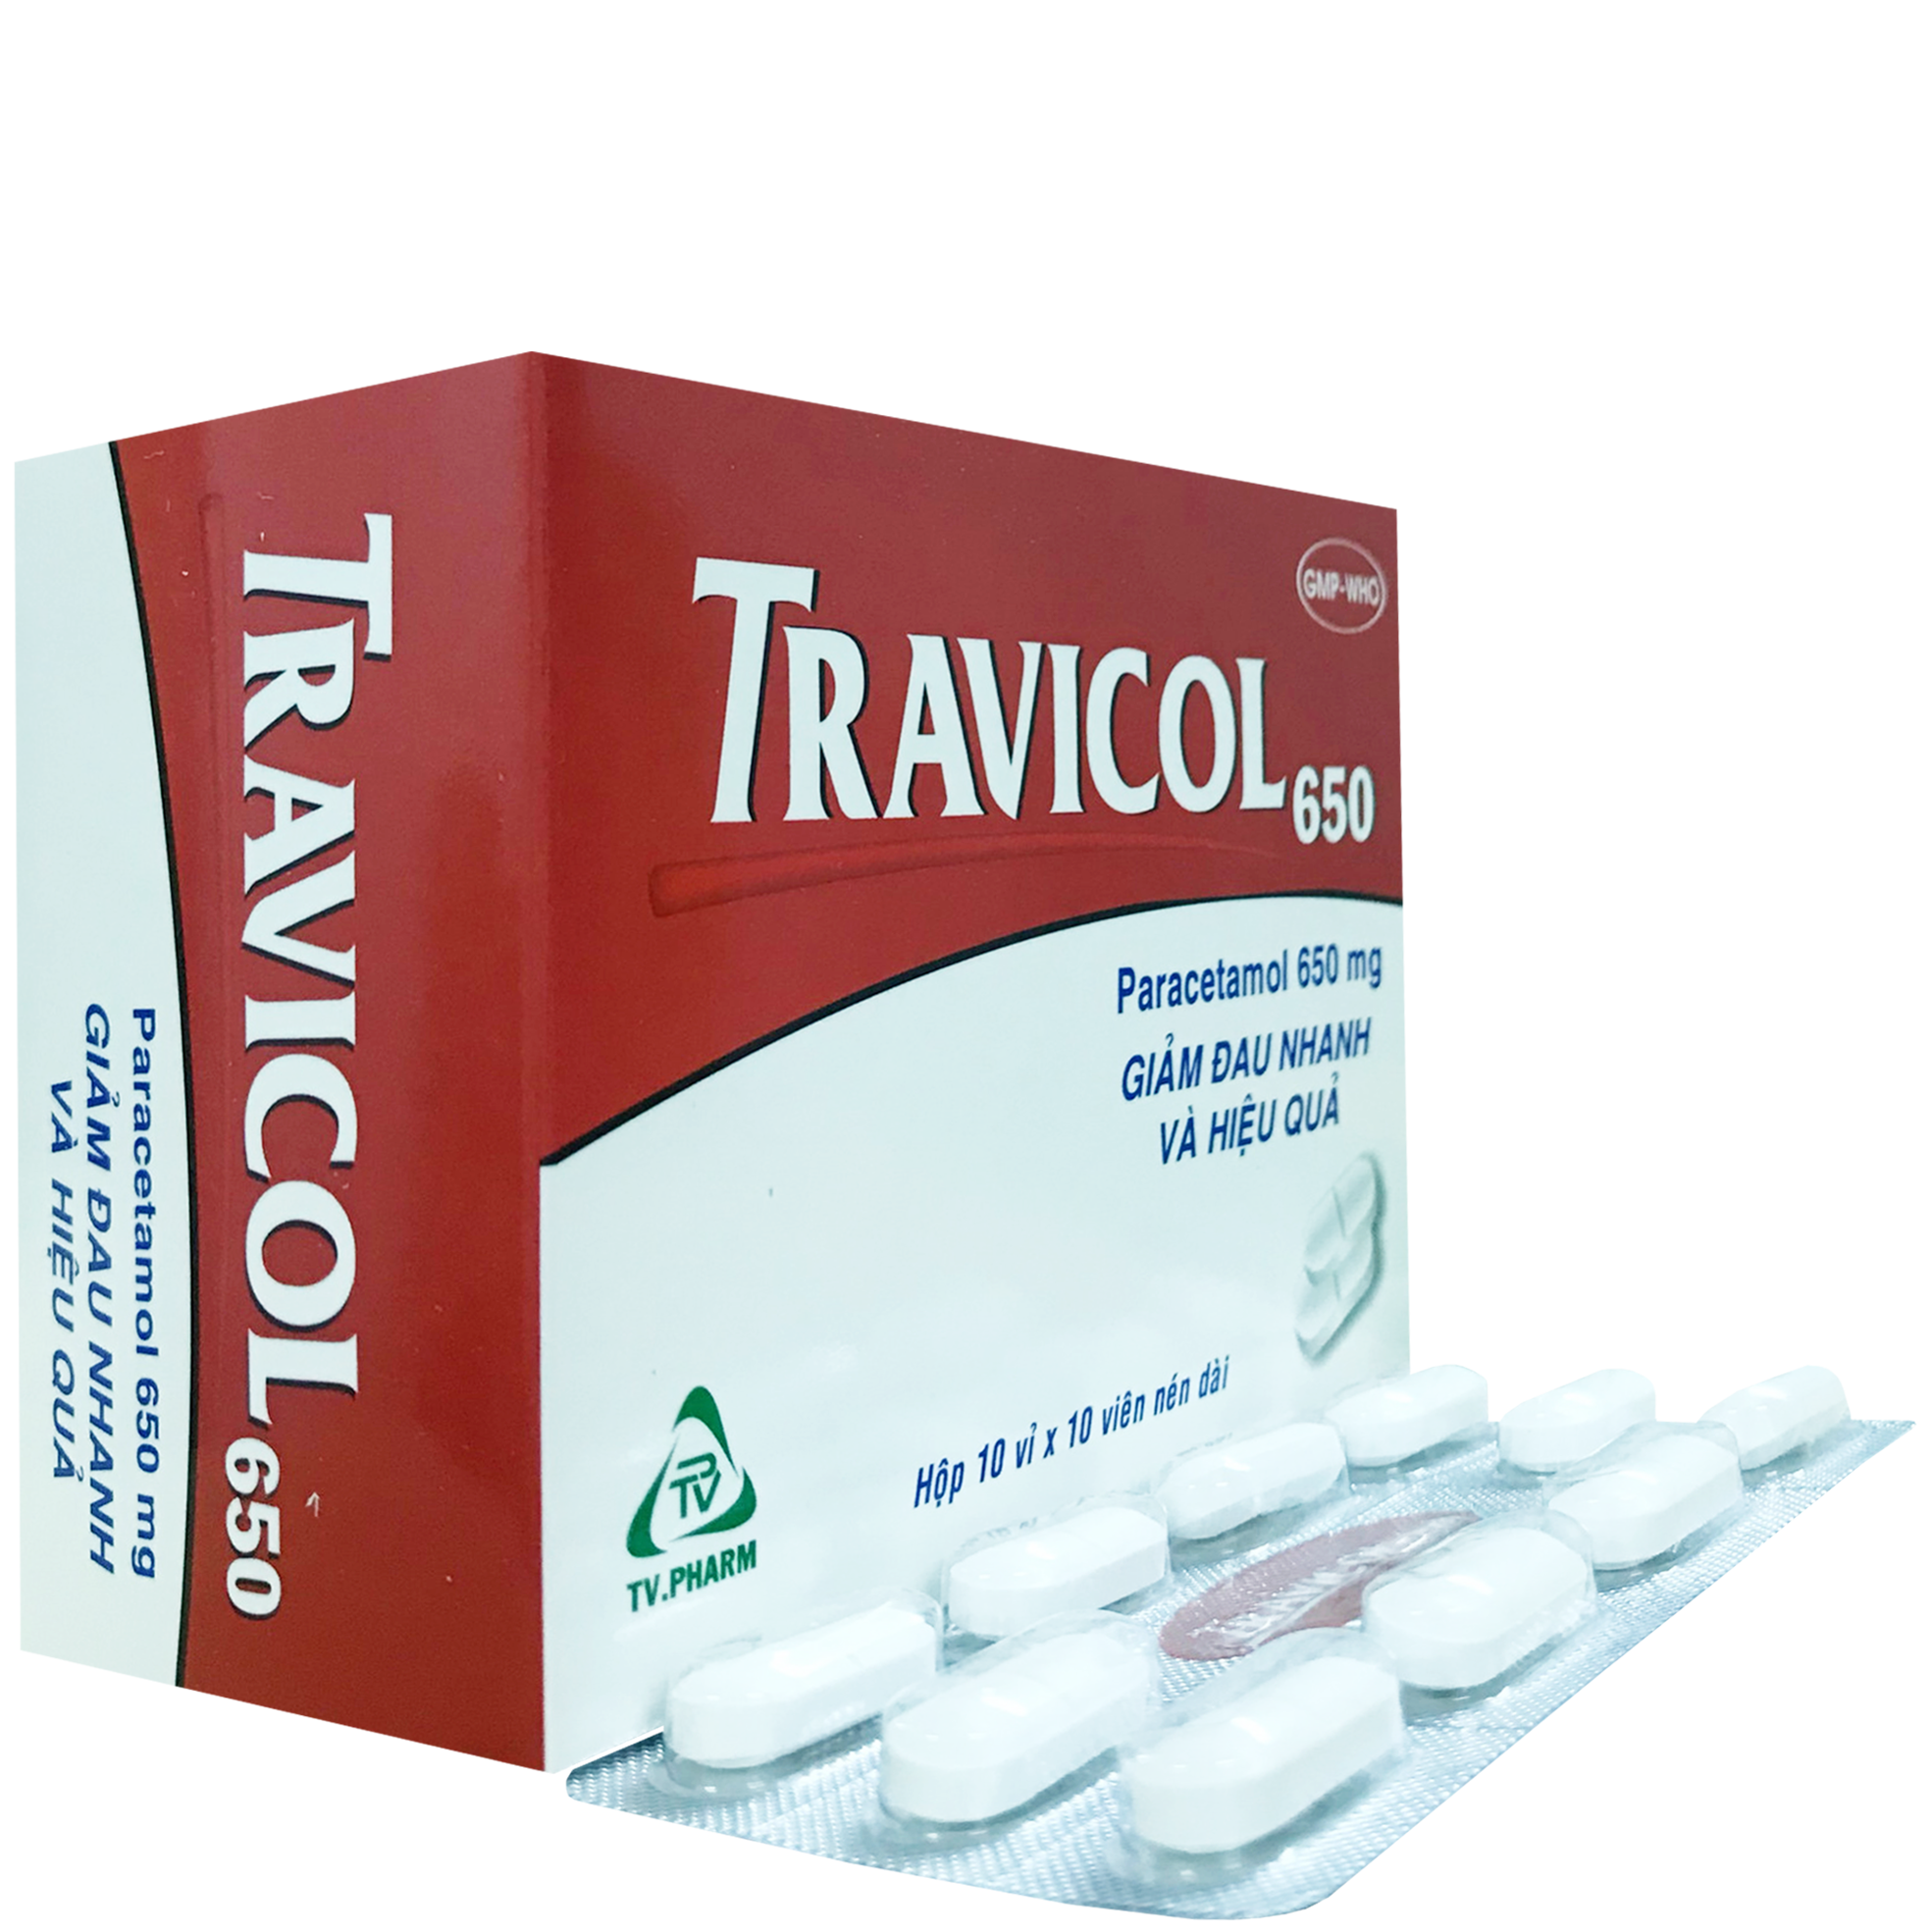 Travicol 650 Paracetamol TV.Pharm (H/100v)